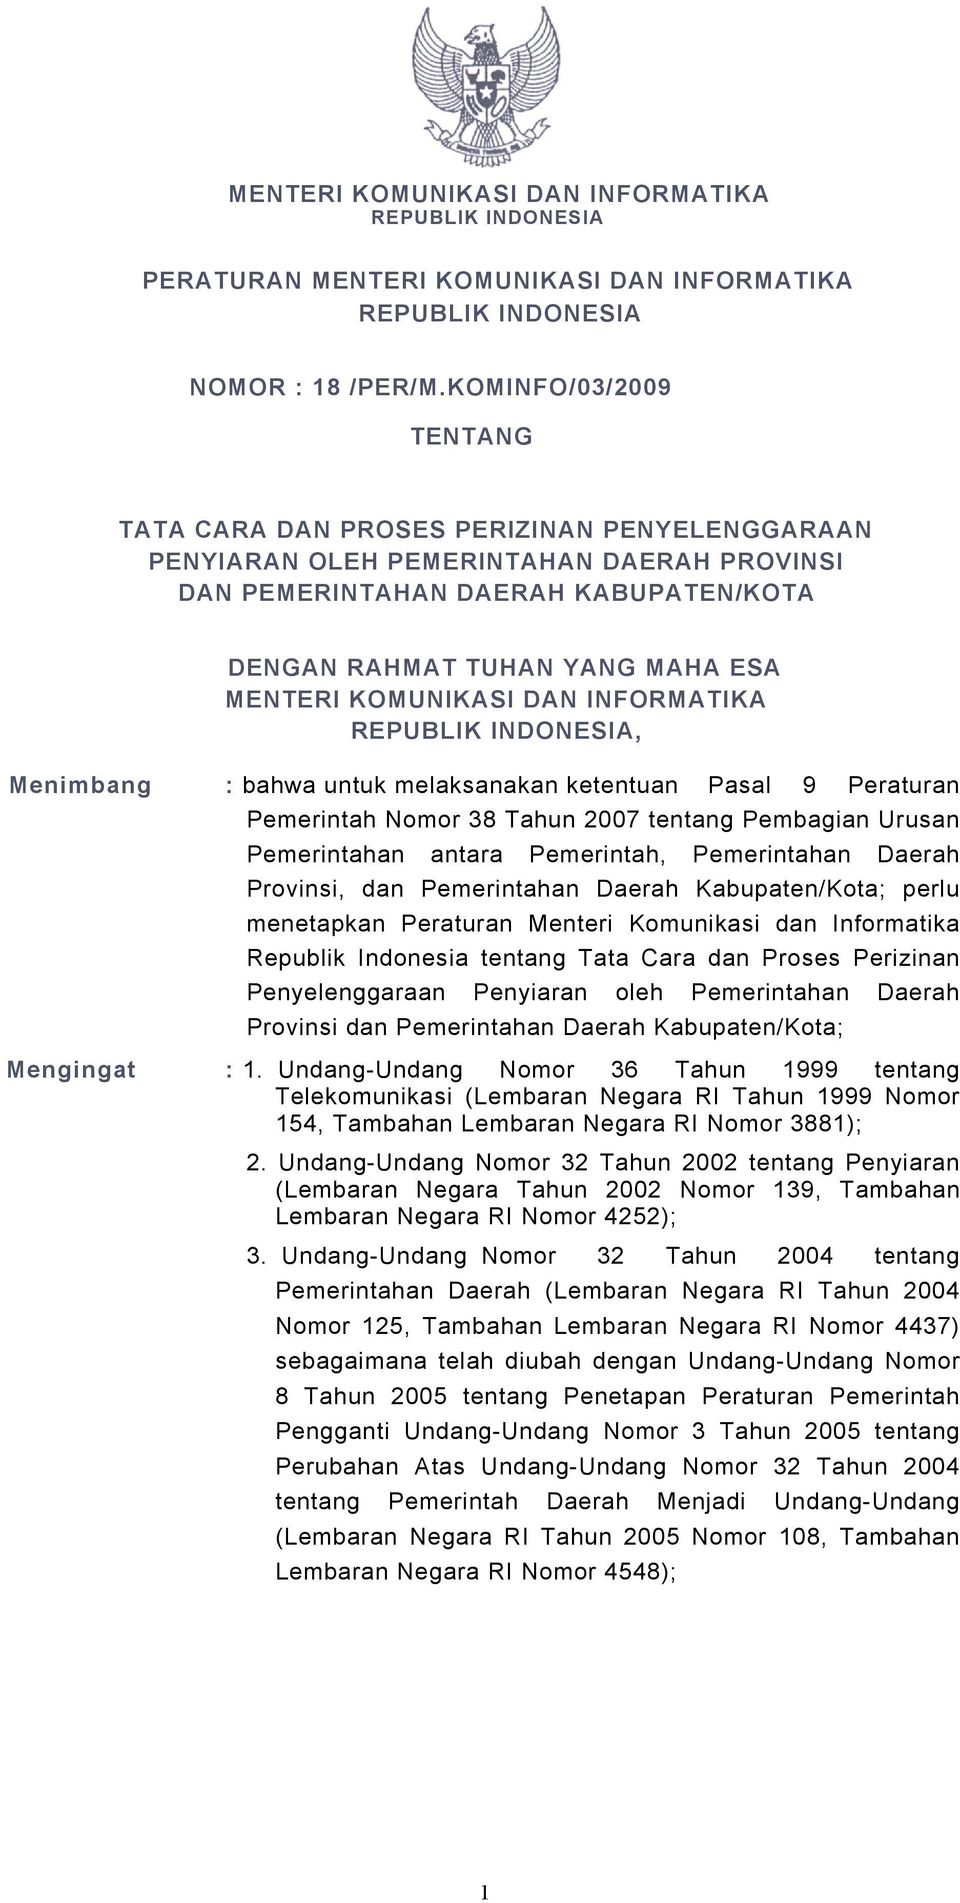 KOMUNIKASI DAN INFORMATIKA REPUBLIK INDONESIA, Menimbang : bahwa untuk melaksanakan ketentuan Pasal 9 Peraturan Pemerintah Nomor 38 Tahun 2007 tentang Pembagian Urusan Pemerintahan antara Pemerintah,